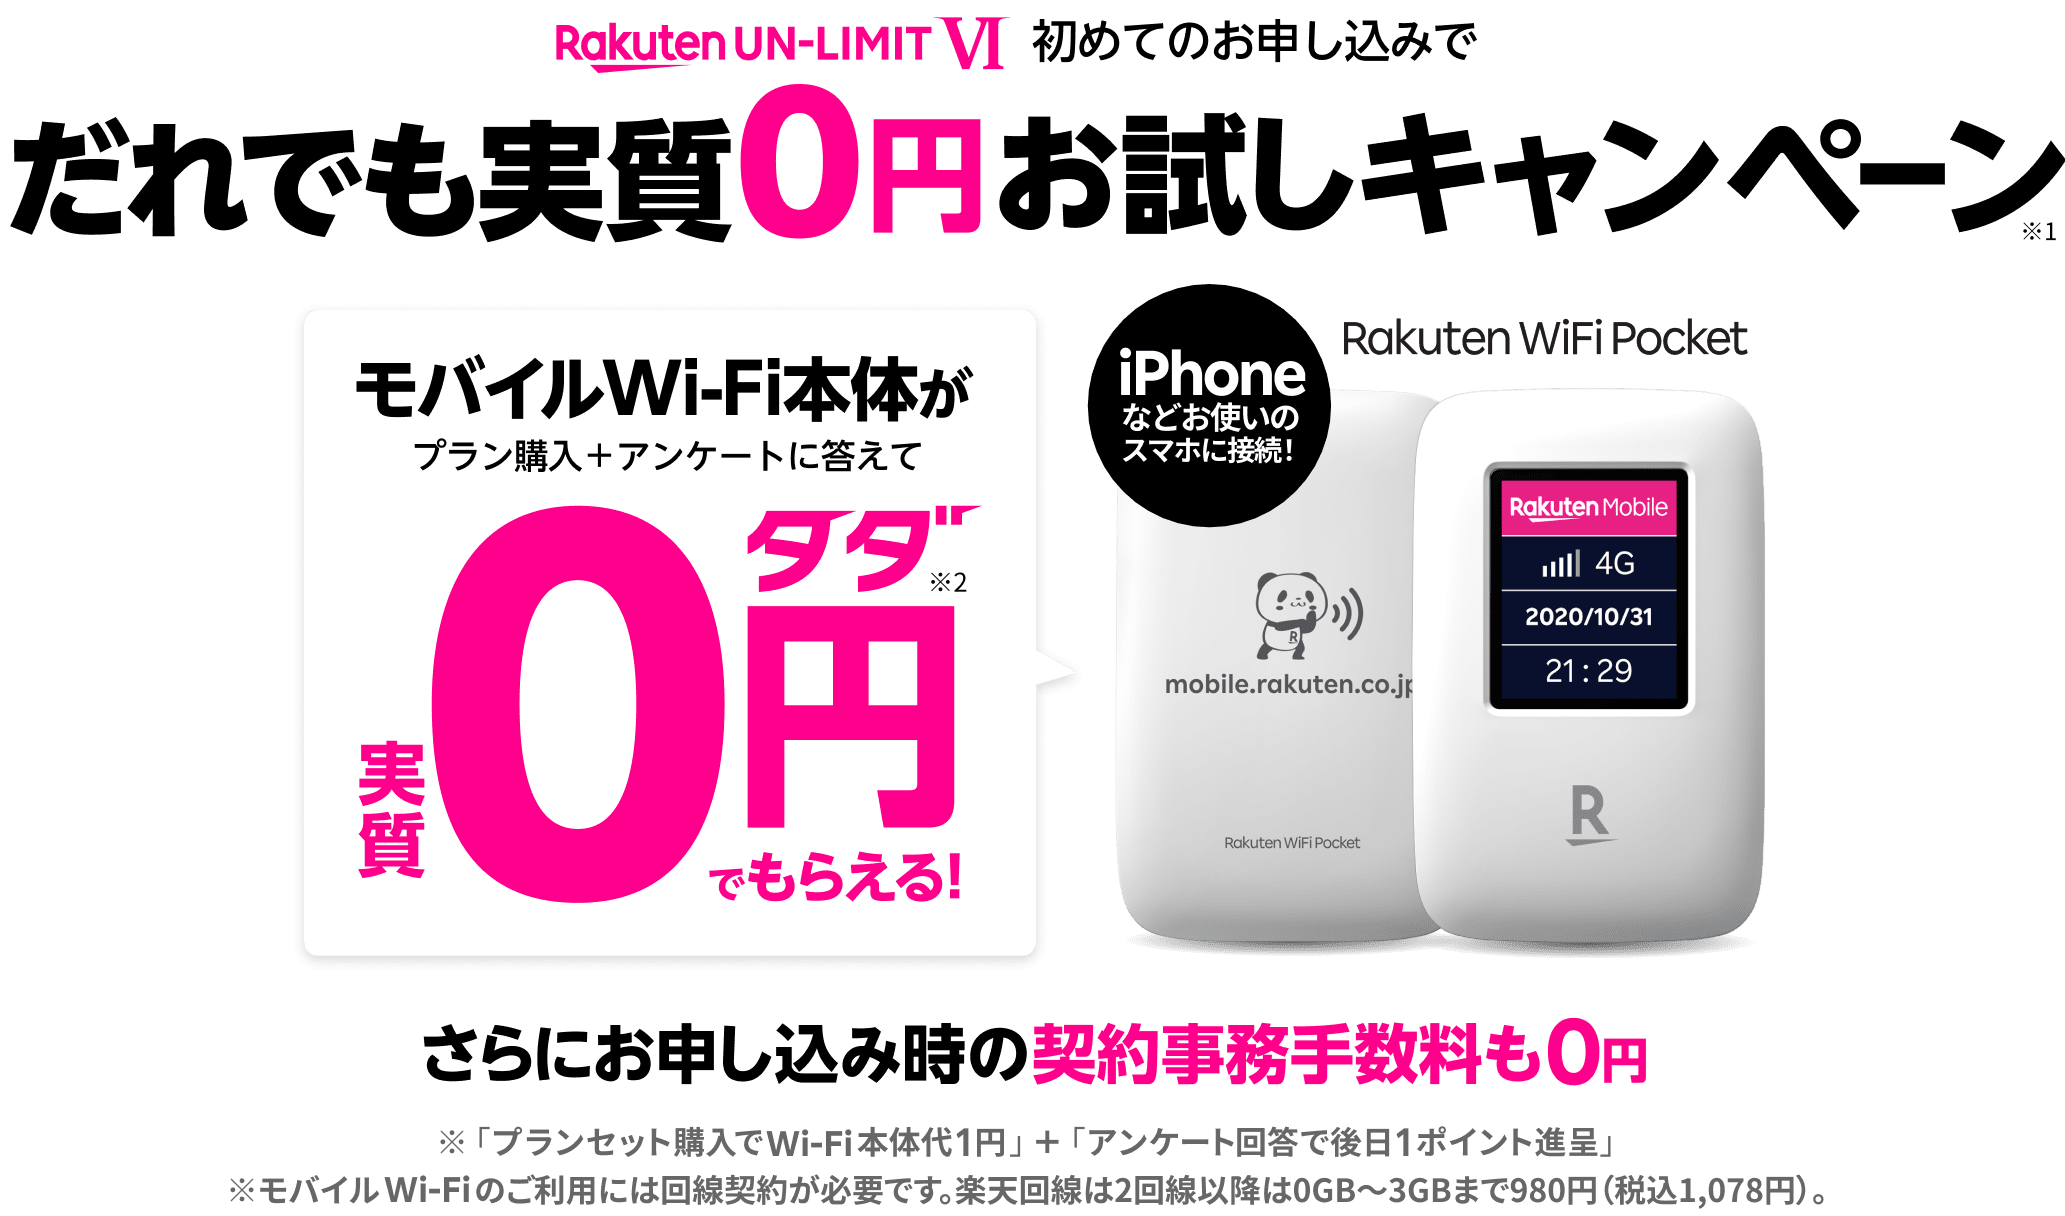 Rakuten UN-LIMIT V 初めてのお申し込みで だれでも実質0円お試しキャンペーン※1 1年無料の楽天回線を0円でお試しできる モバイルWi-Fi本体がプラン購入＋アンケートに答えて※実質0円タダ※2でもらえる！ iPhoneなどお使いのスマホに接続！ Rakuten WiFi Pocket データ使い放題が※3（2,980円/月）1回線目なら0円タダ（1年間）※4 さらにお申し込み時の契約事務手数料も0円 ※「プランセット購入でWi-Fi本体代1円」＋「アンケート回答で後日1ポイント進呈」